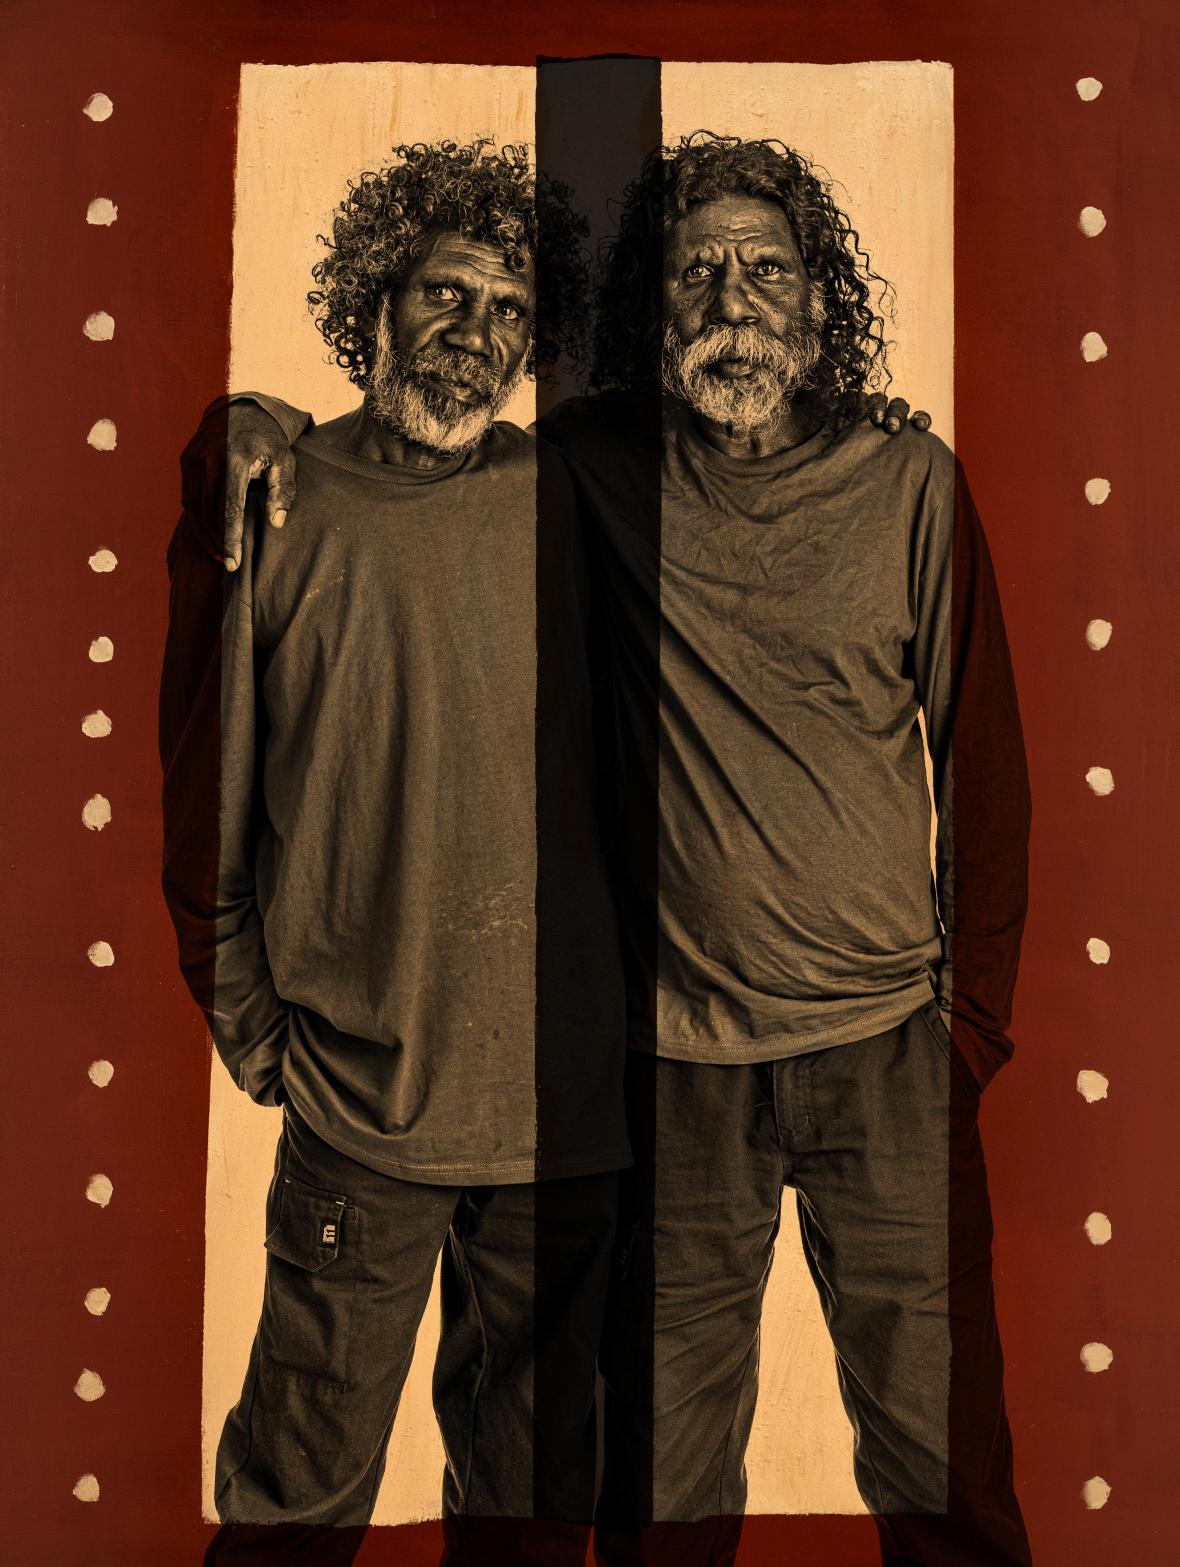 Η φωτογραφία με του αδελφούς Λι και Γκάρι -διάσημοι Αβορίγινες καλλιτέχνες- κέρδισε την τρίτη θέση του διαγωνισμού στην κατηγορία Χαρακτήρες